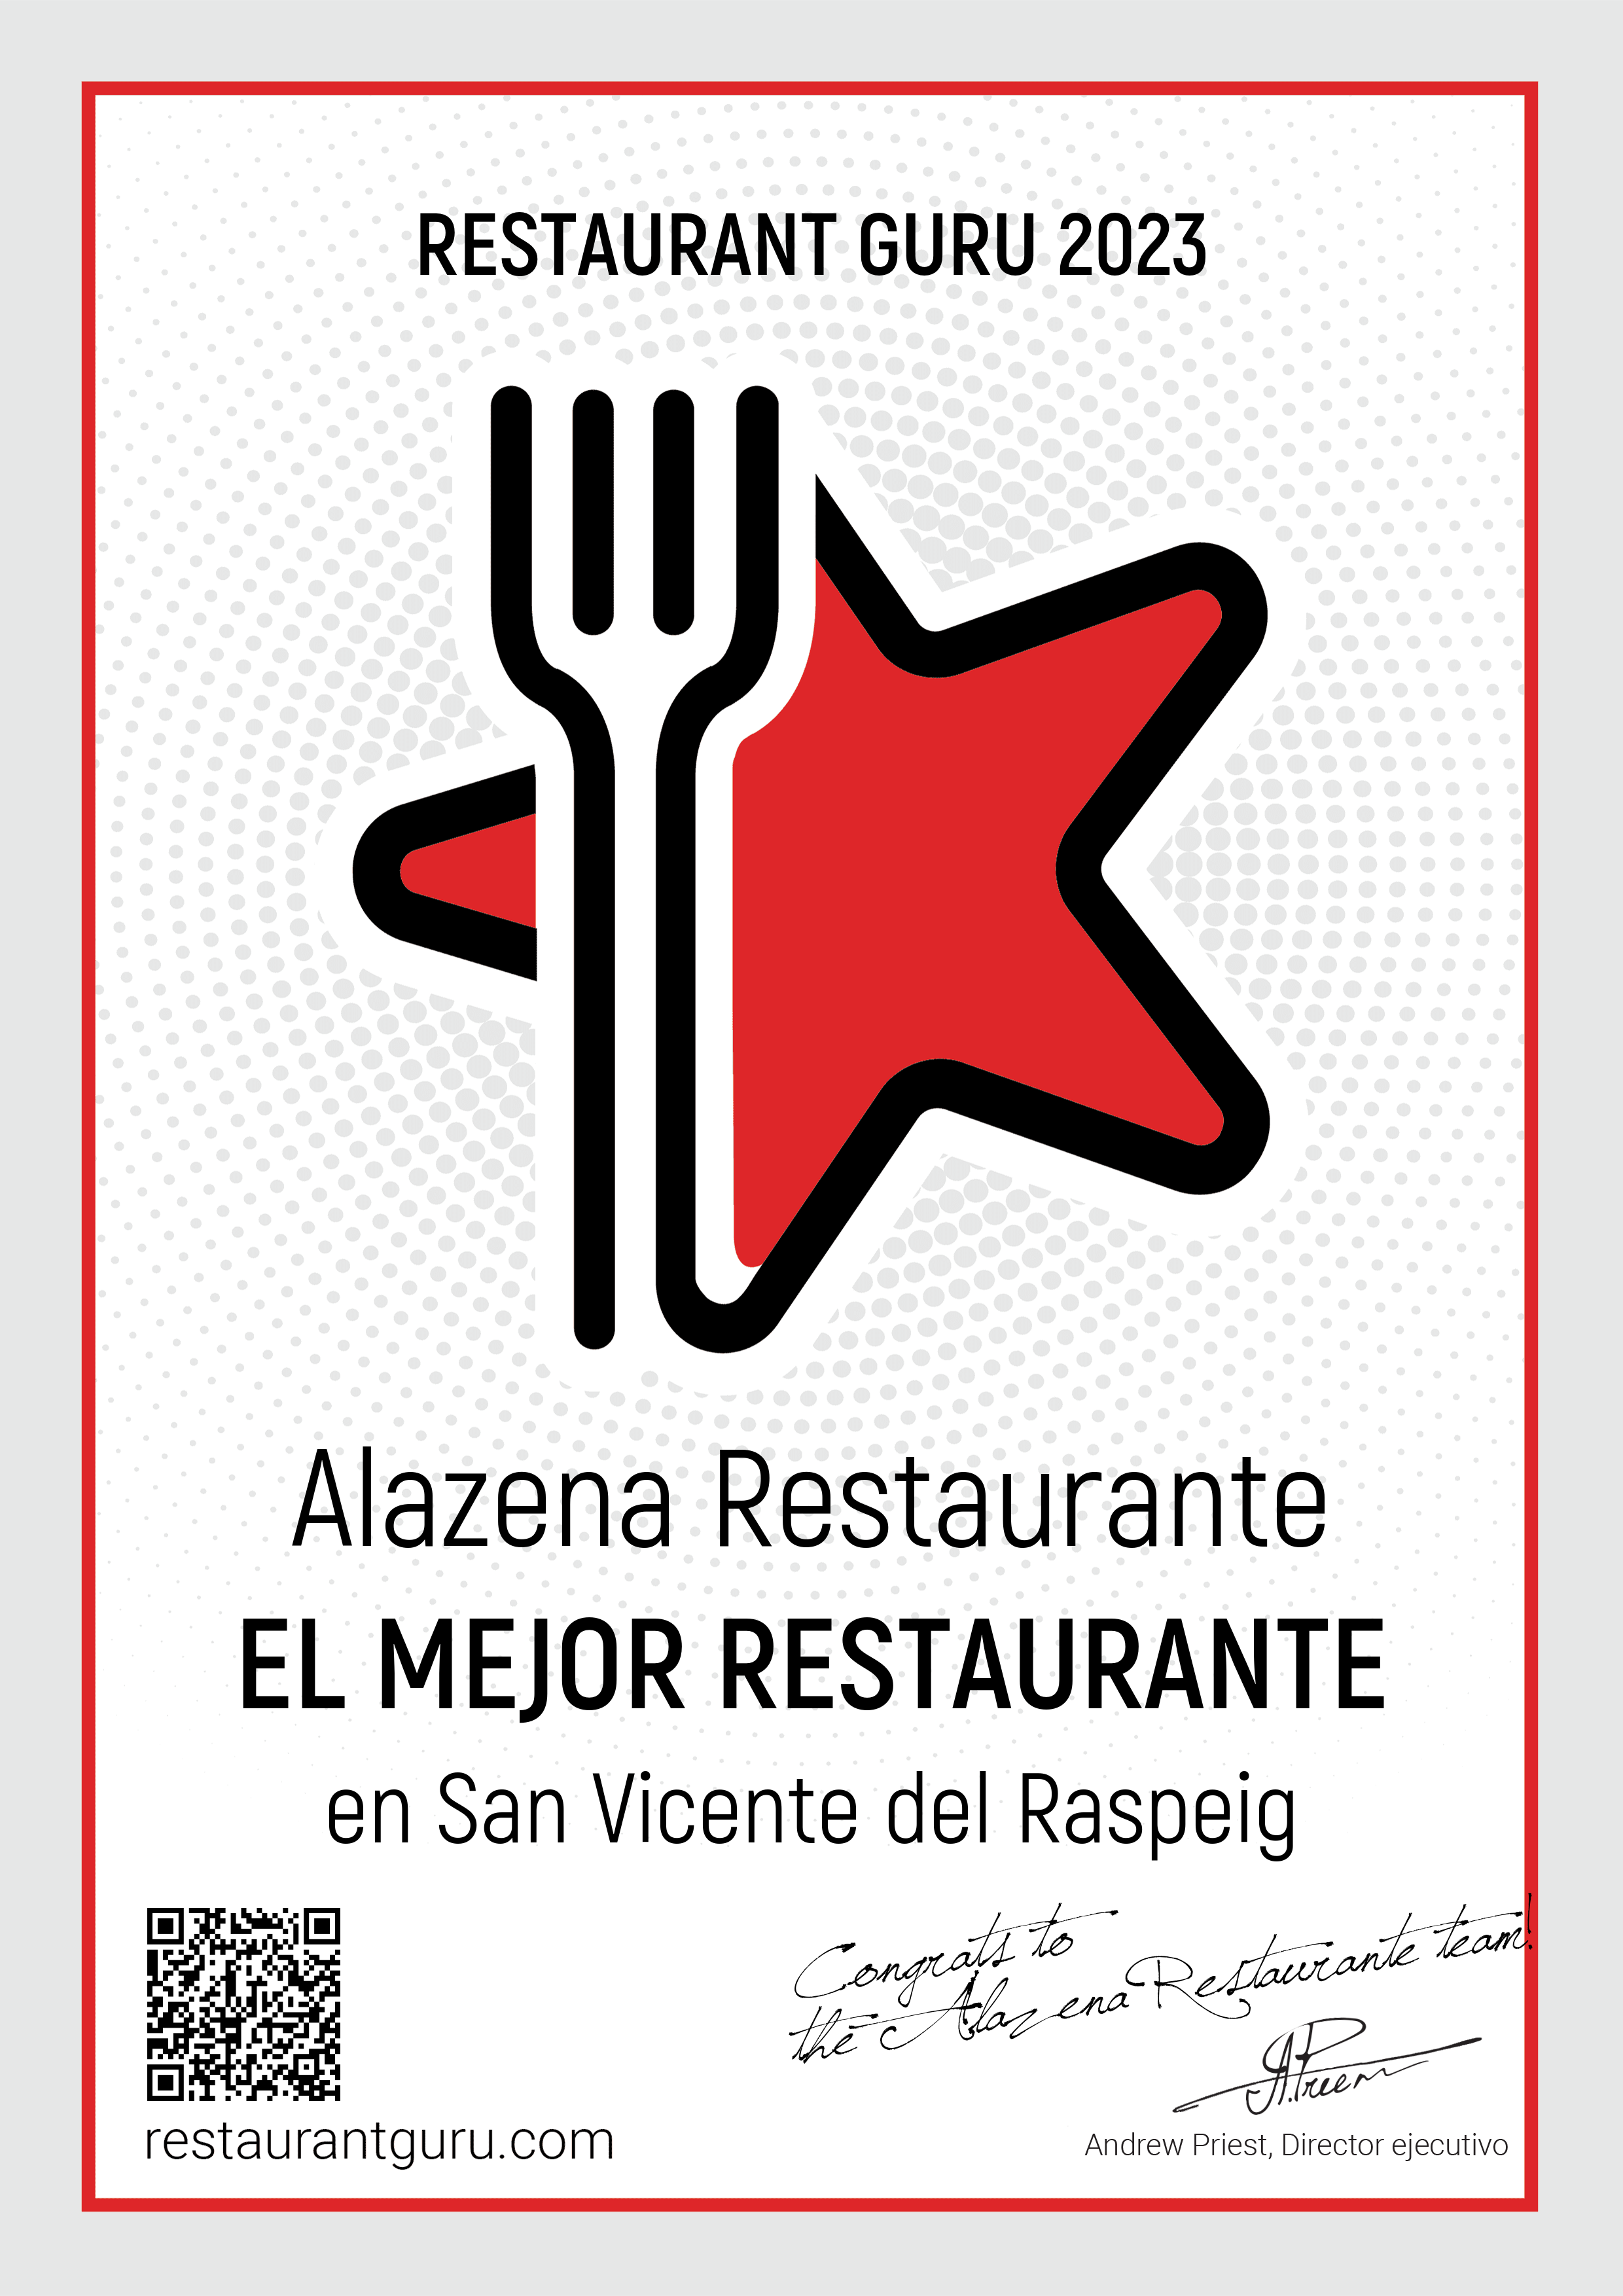 Premio al mejor restaurante de San Vicente del Raspeig en RestaurantGuru